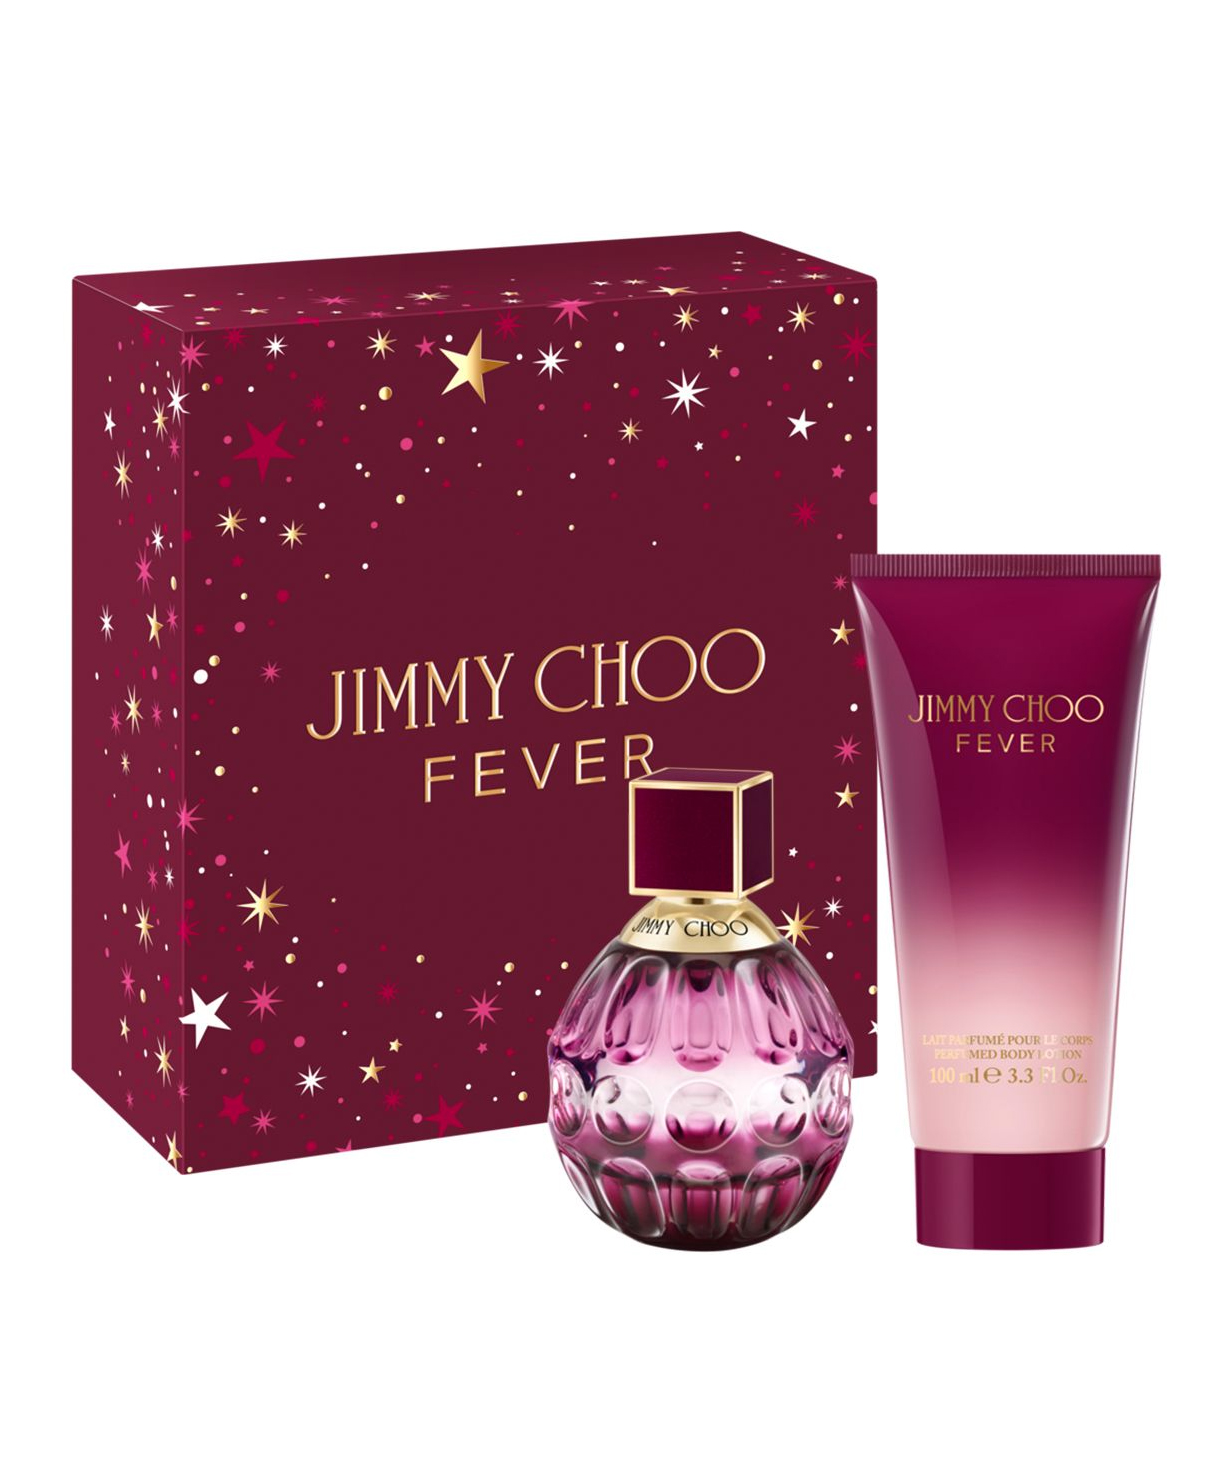 Perfume «Jimmy Choo» Fever old, for women, 60+100 ml